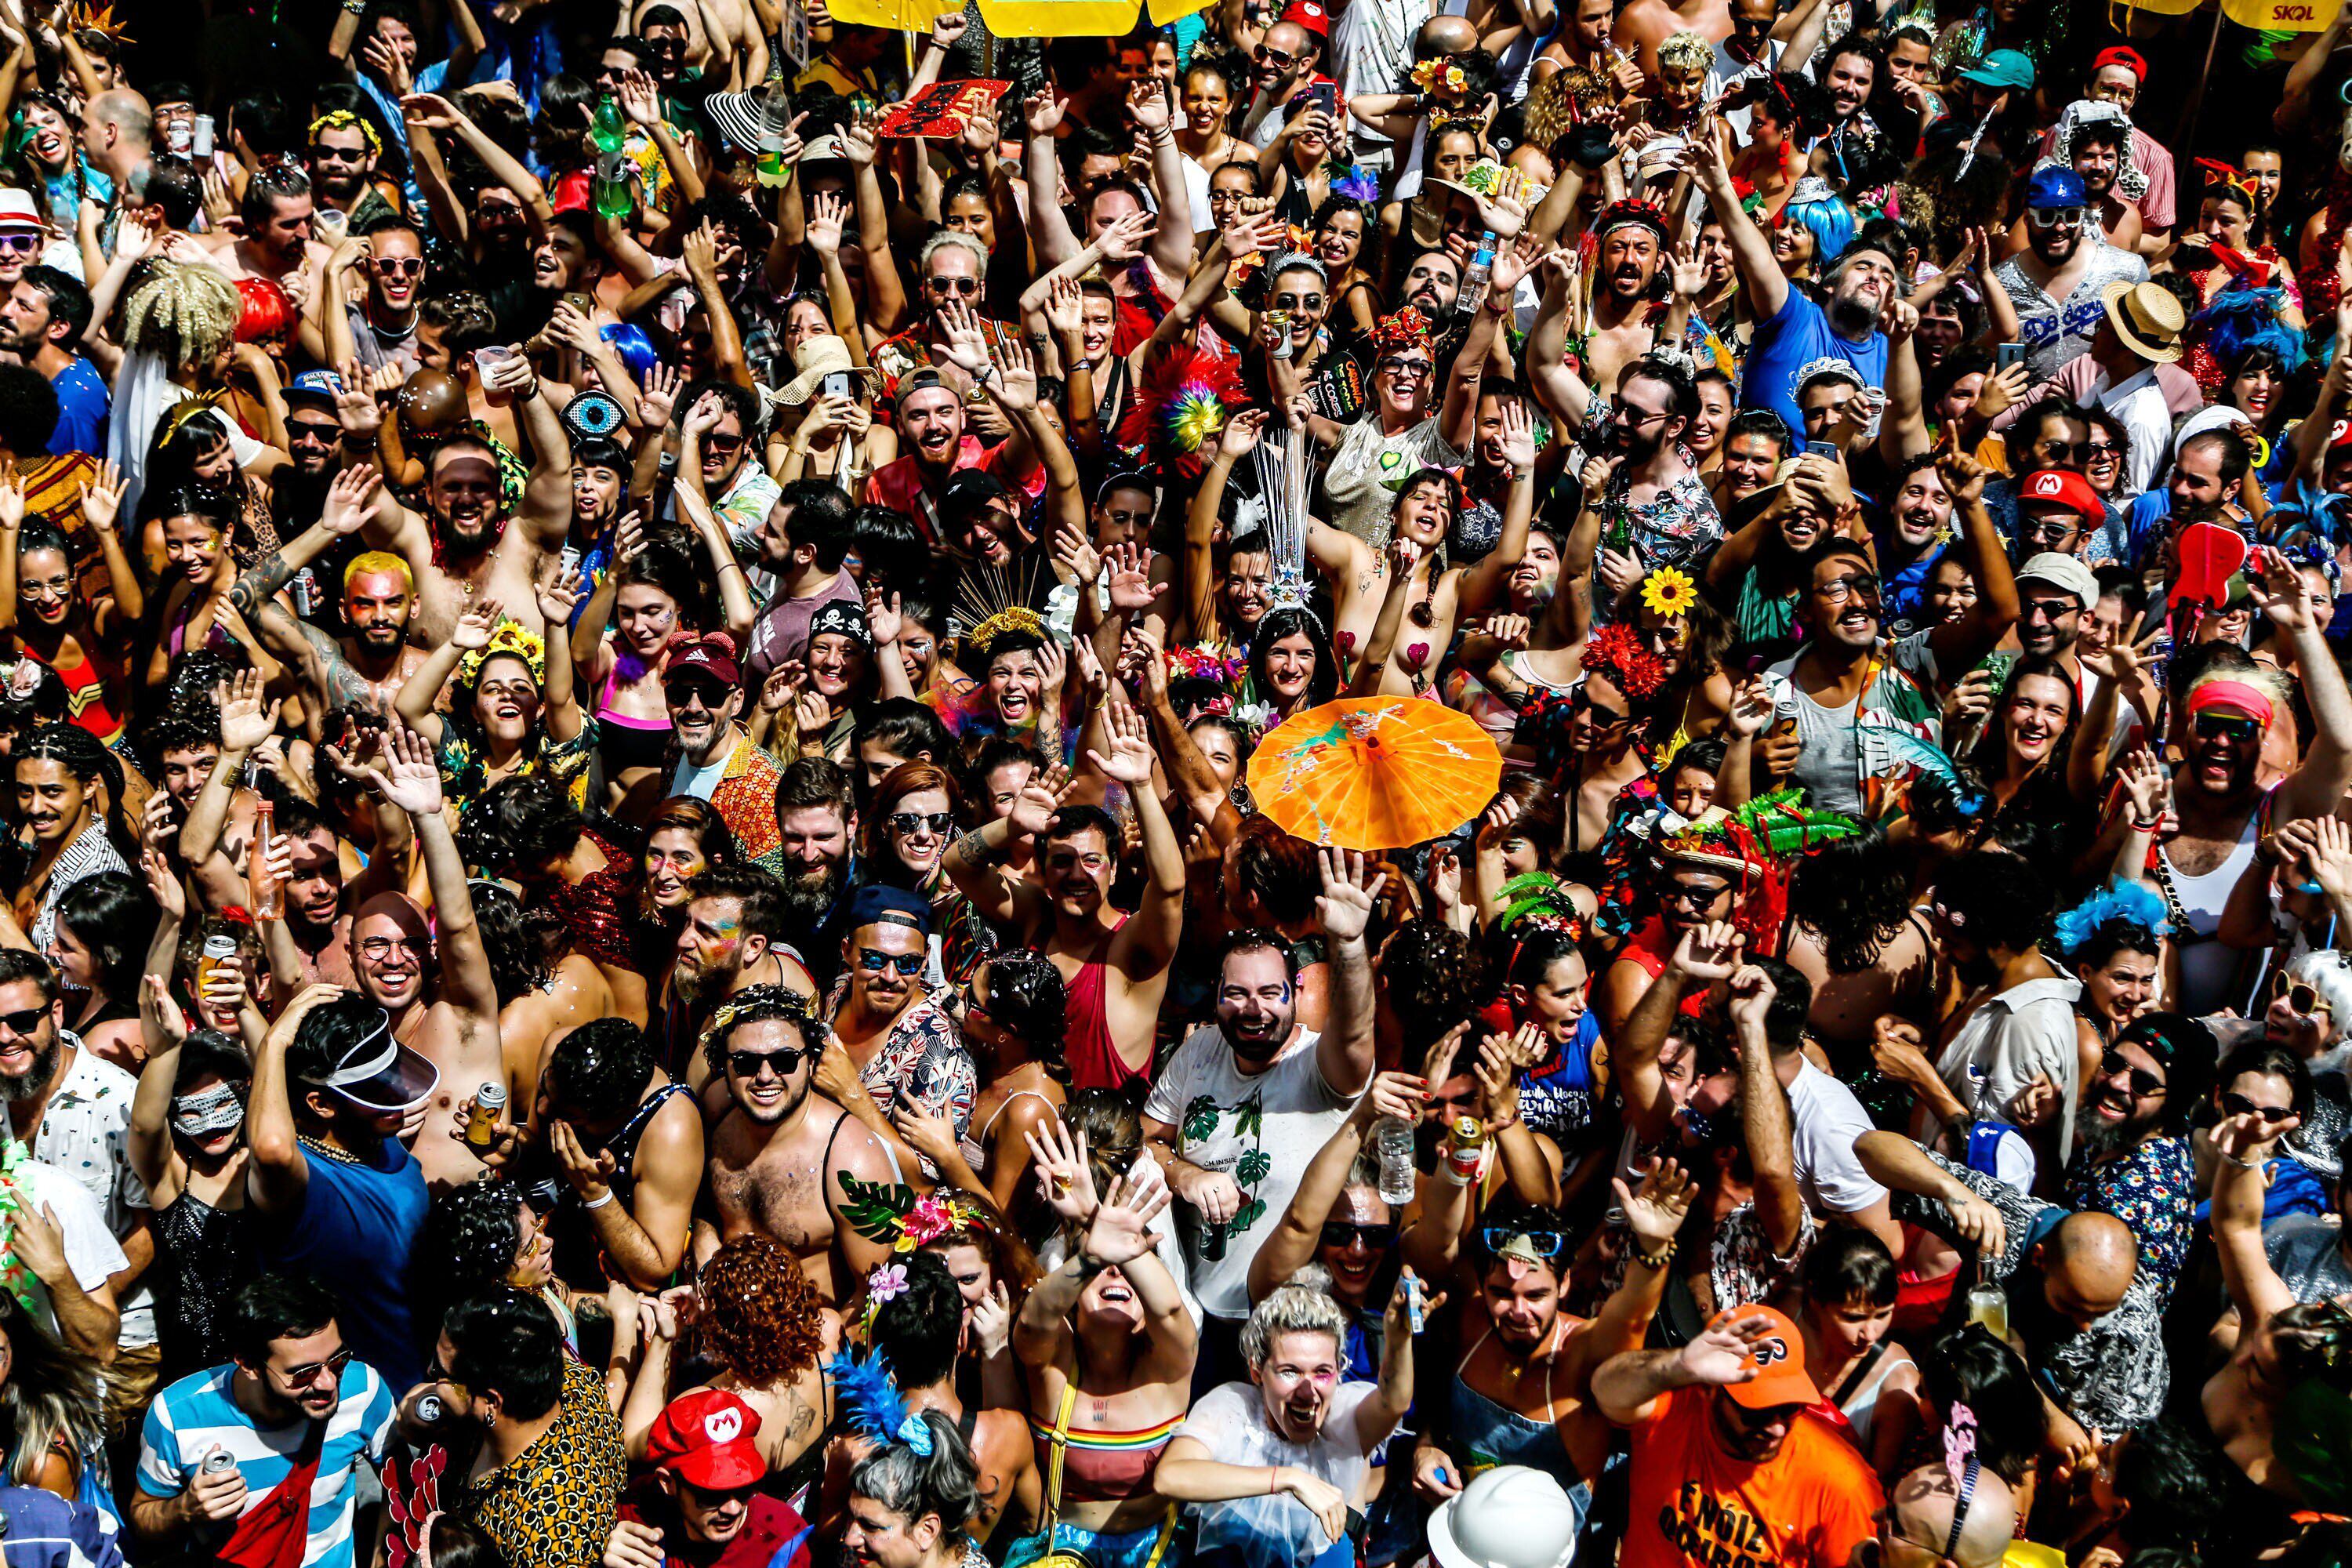 Rio de Janeiro cancela Carnaval de rua em 2022 em função da pandemia